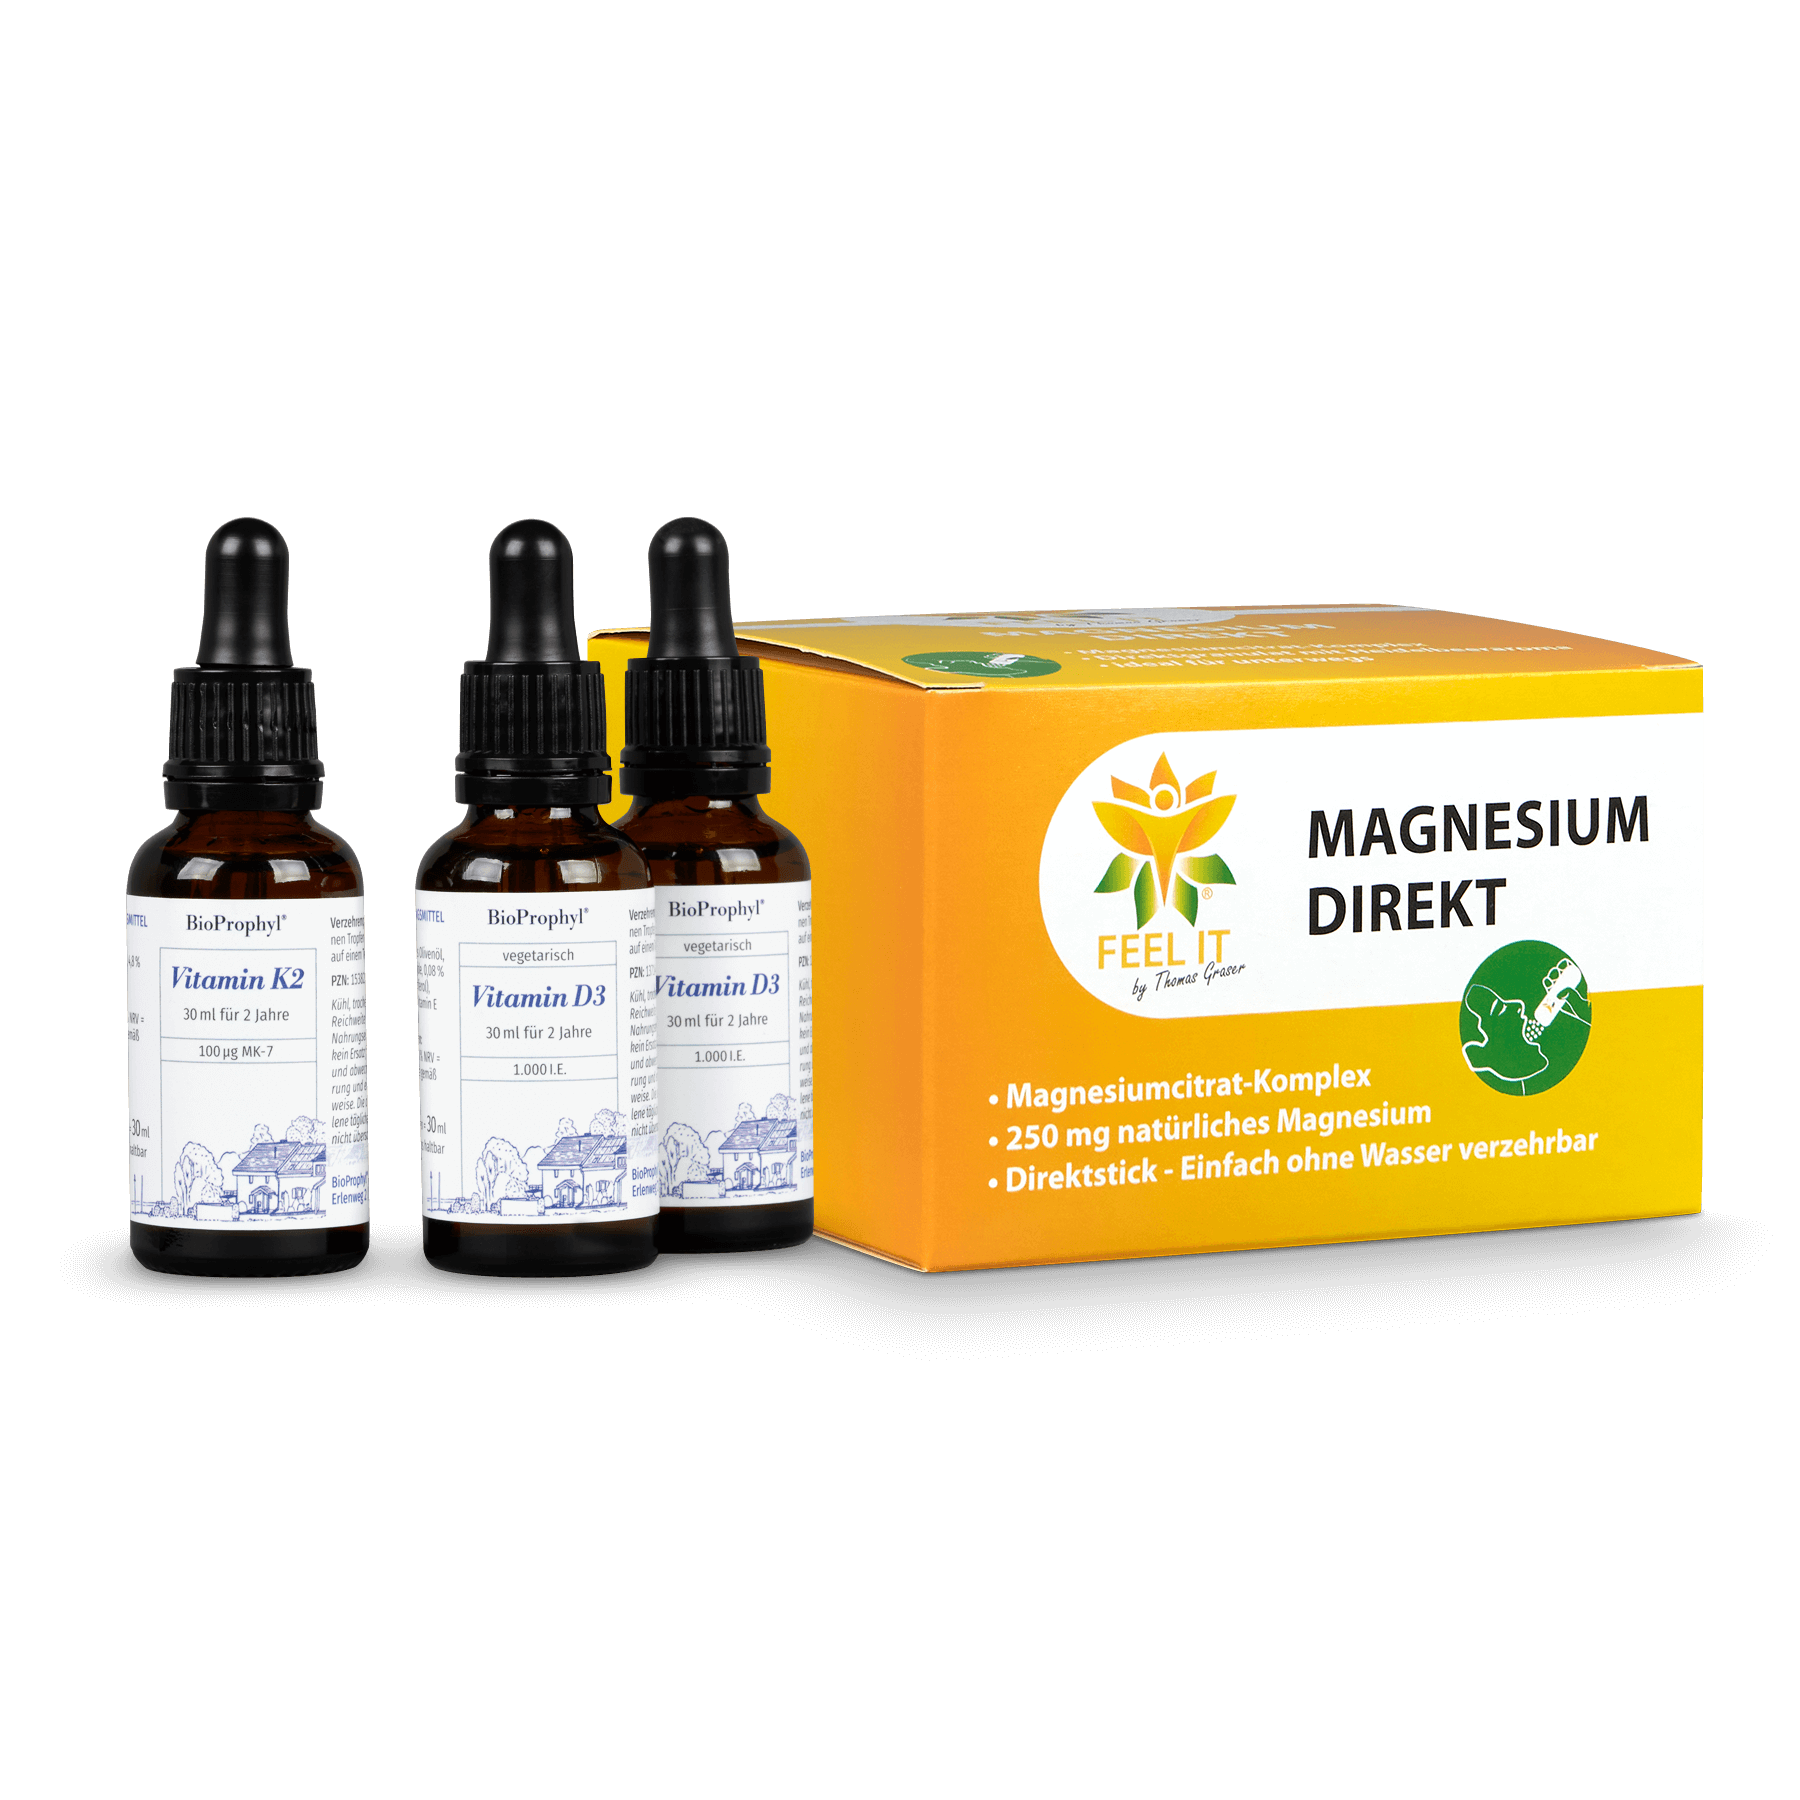 Vitamin D3 Tropfen und Vitamin K2 Tropfen freigestellte Fläschchen + Magnesium Direkt Box